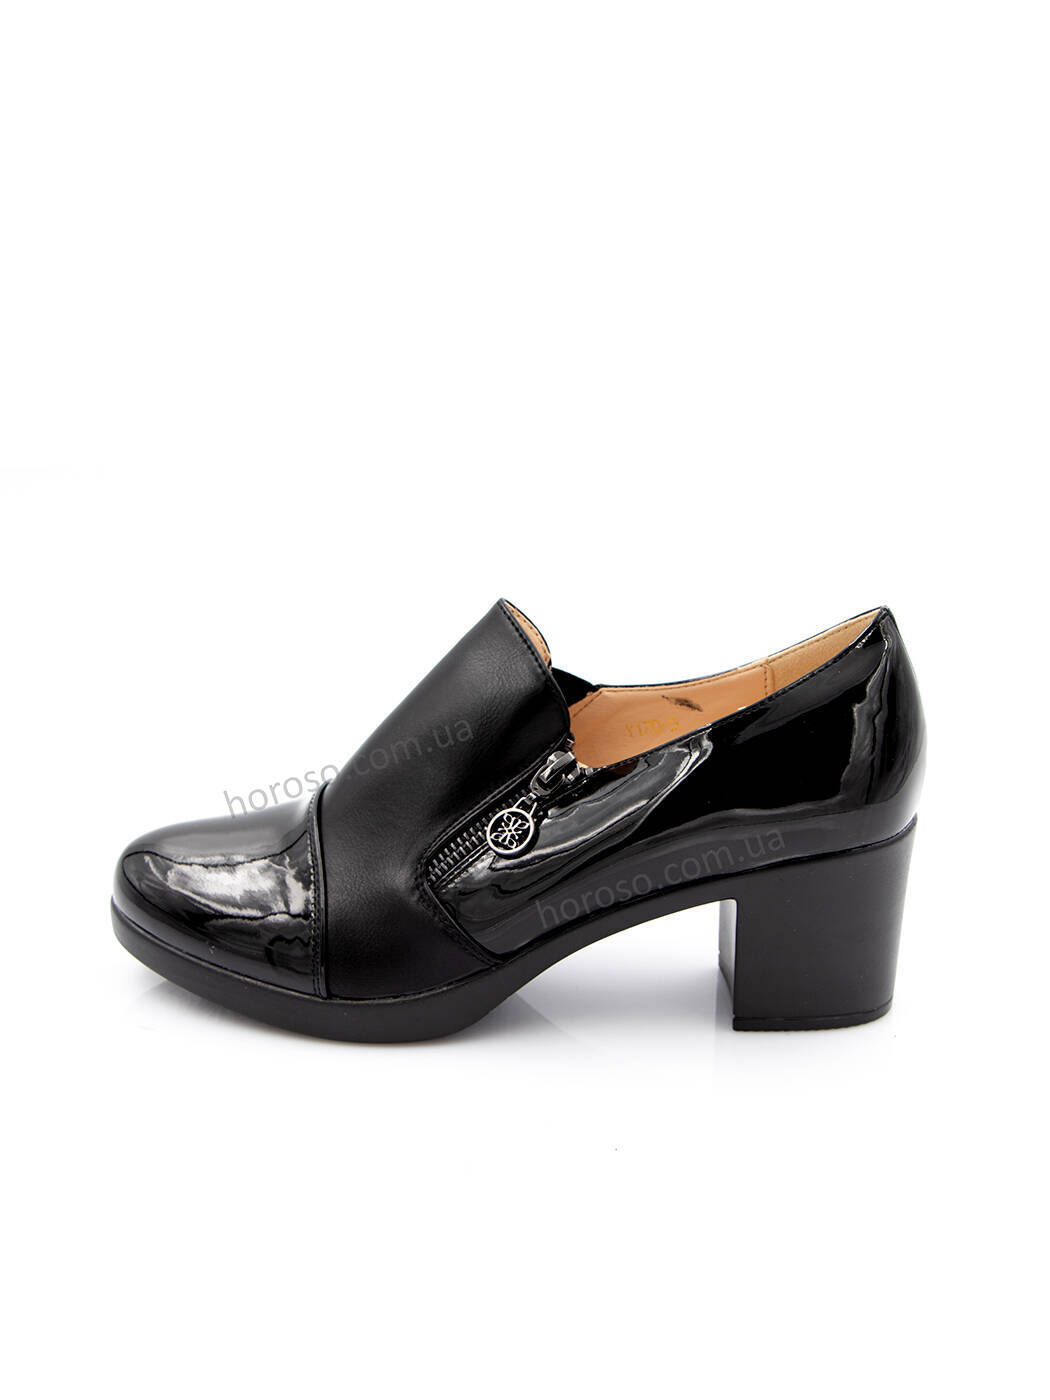 Туфли женские черные экокожа каблук устойчивый демисезон 170-5_M